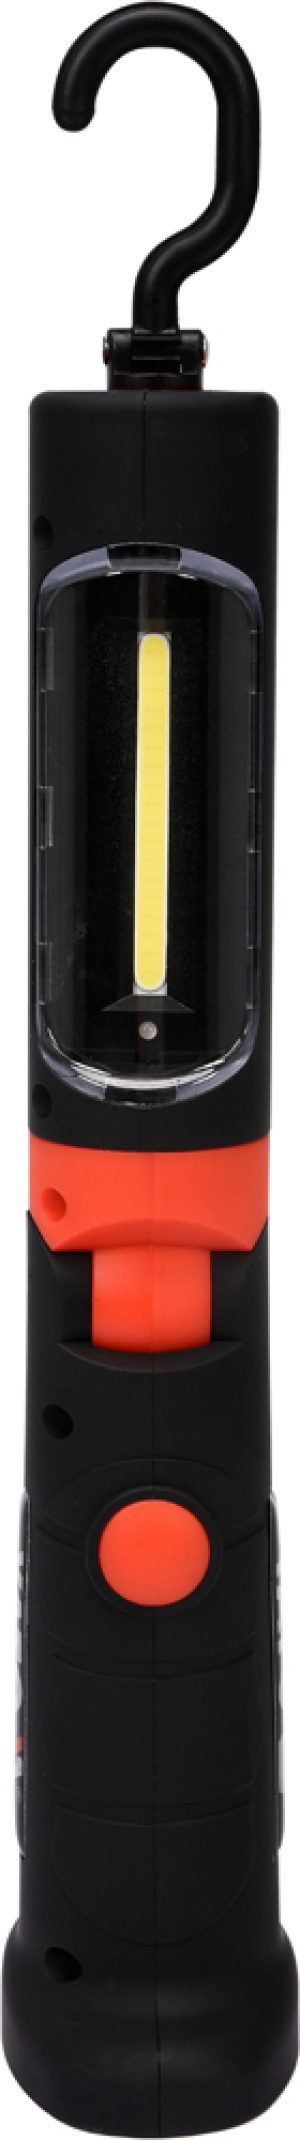 Yato Lampa warsztatowa Cob LED 3W akumulatorowa (YT-08563) 1